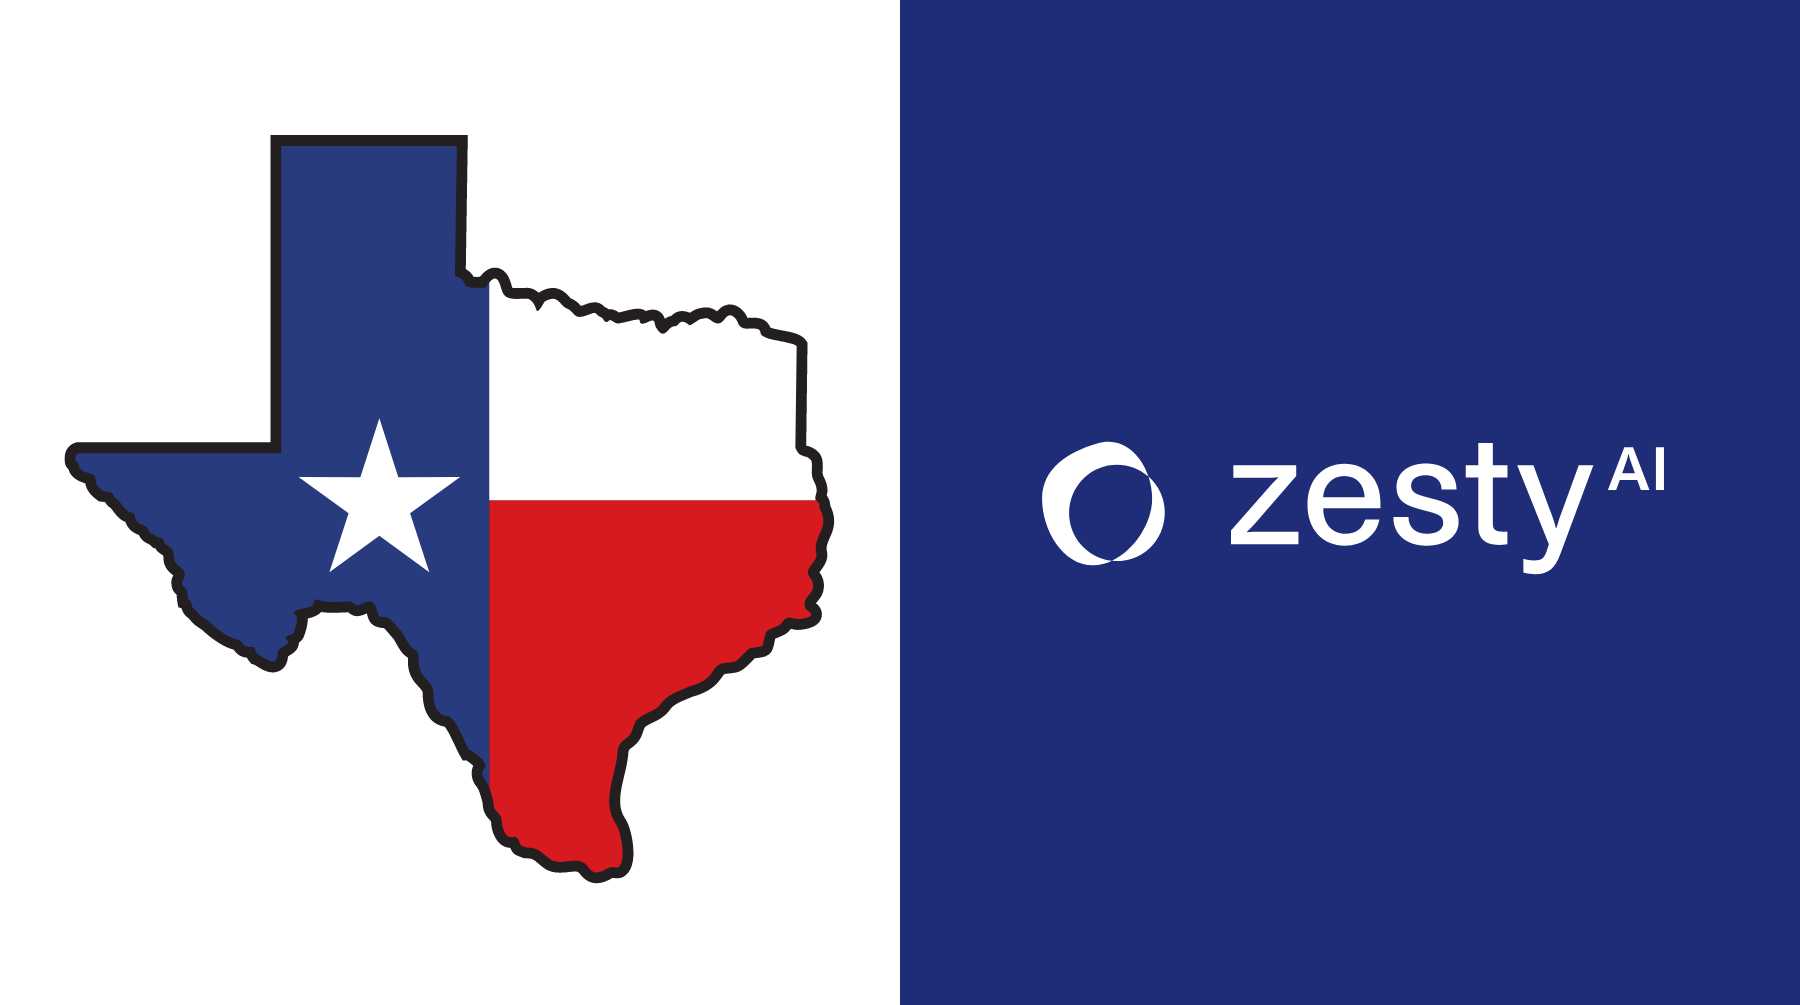 ZestyAI's Storm Models Receive Landmark Approval From Texas